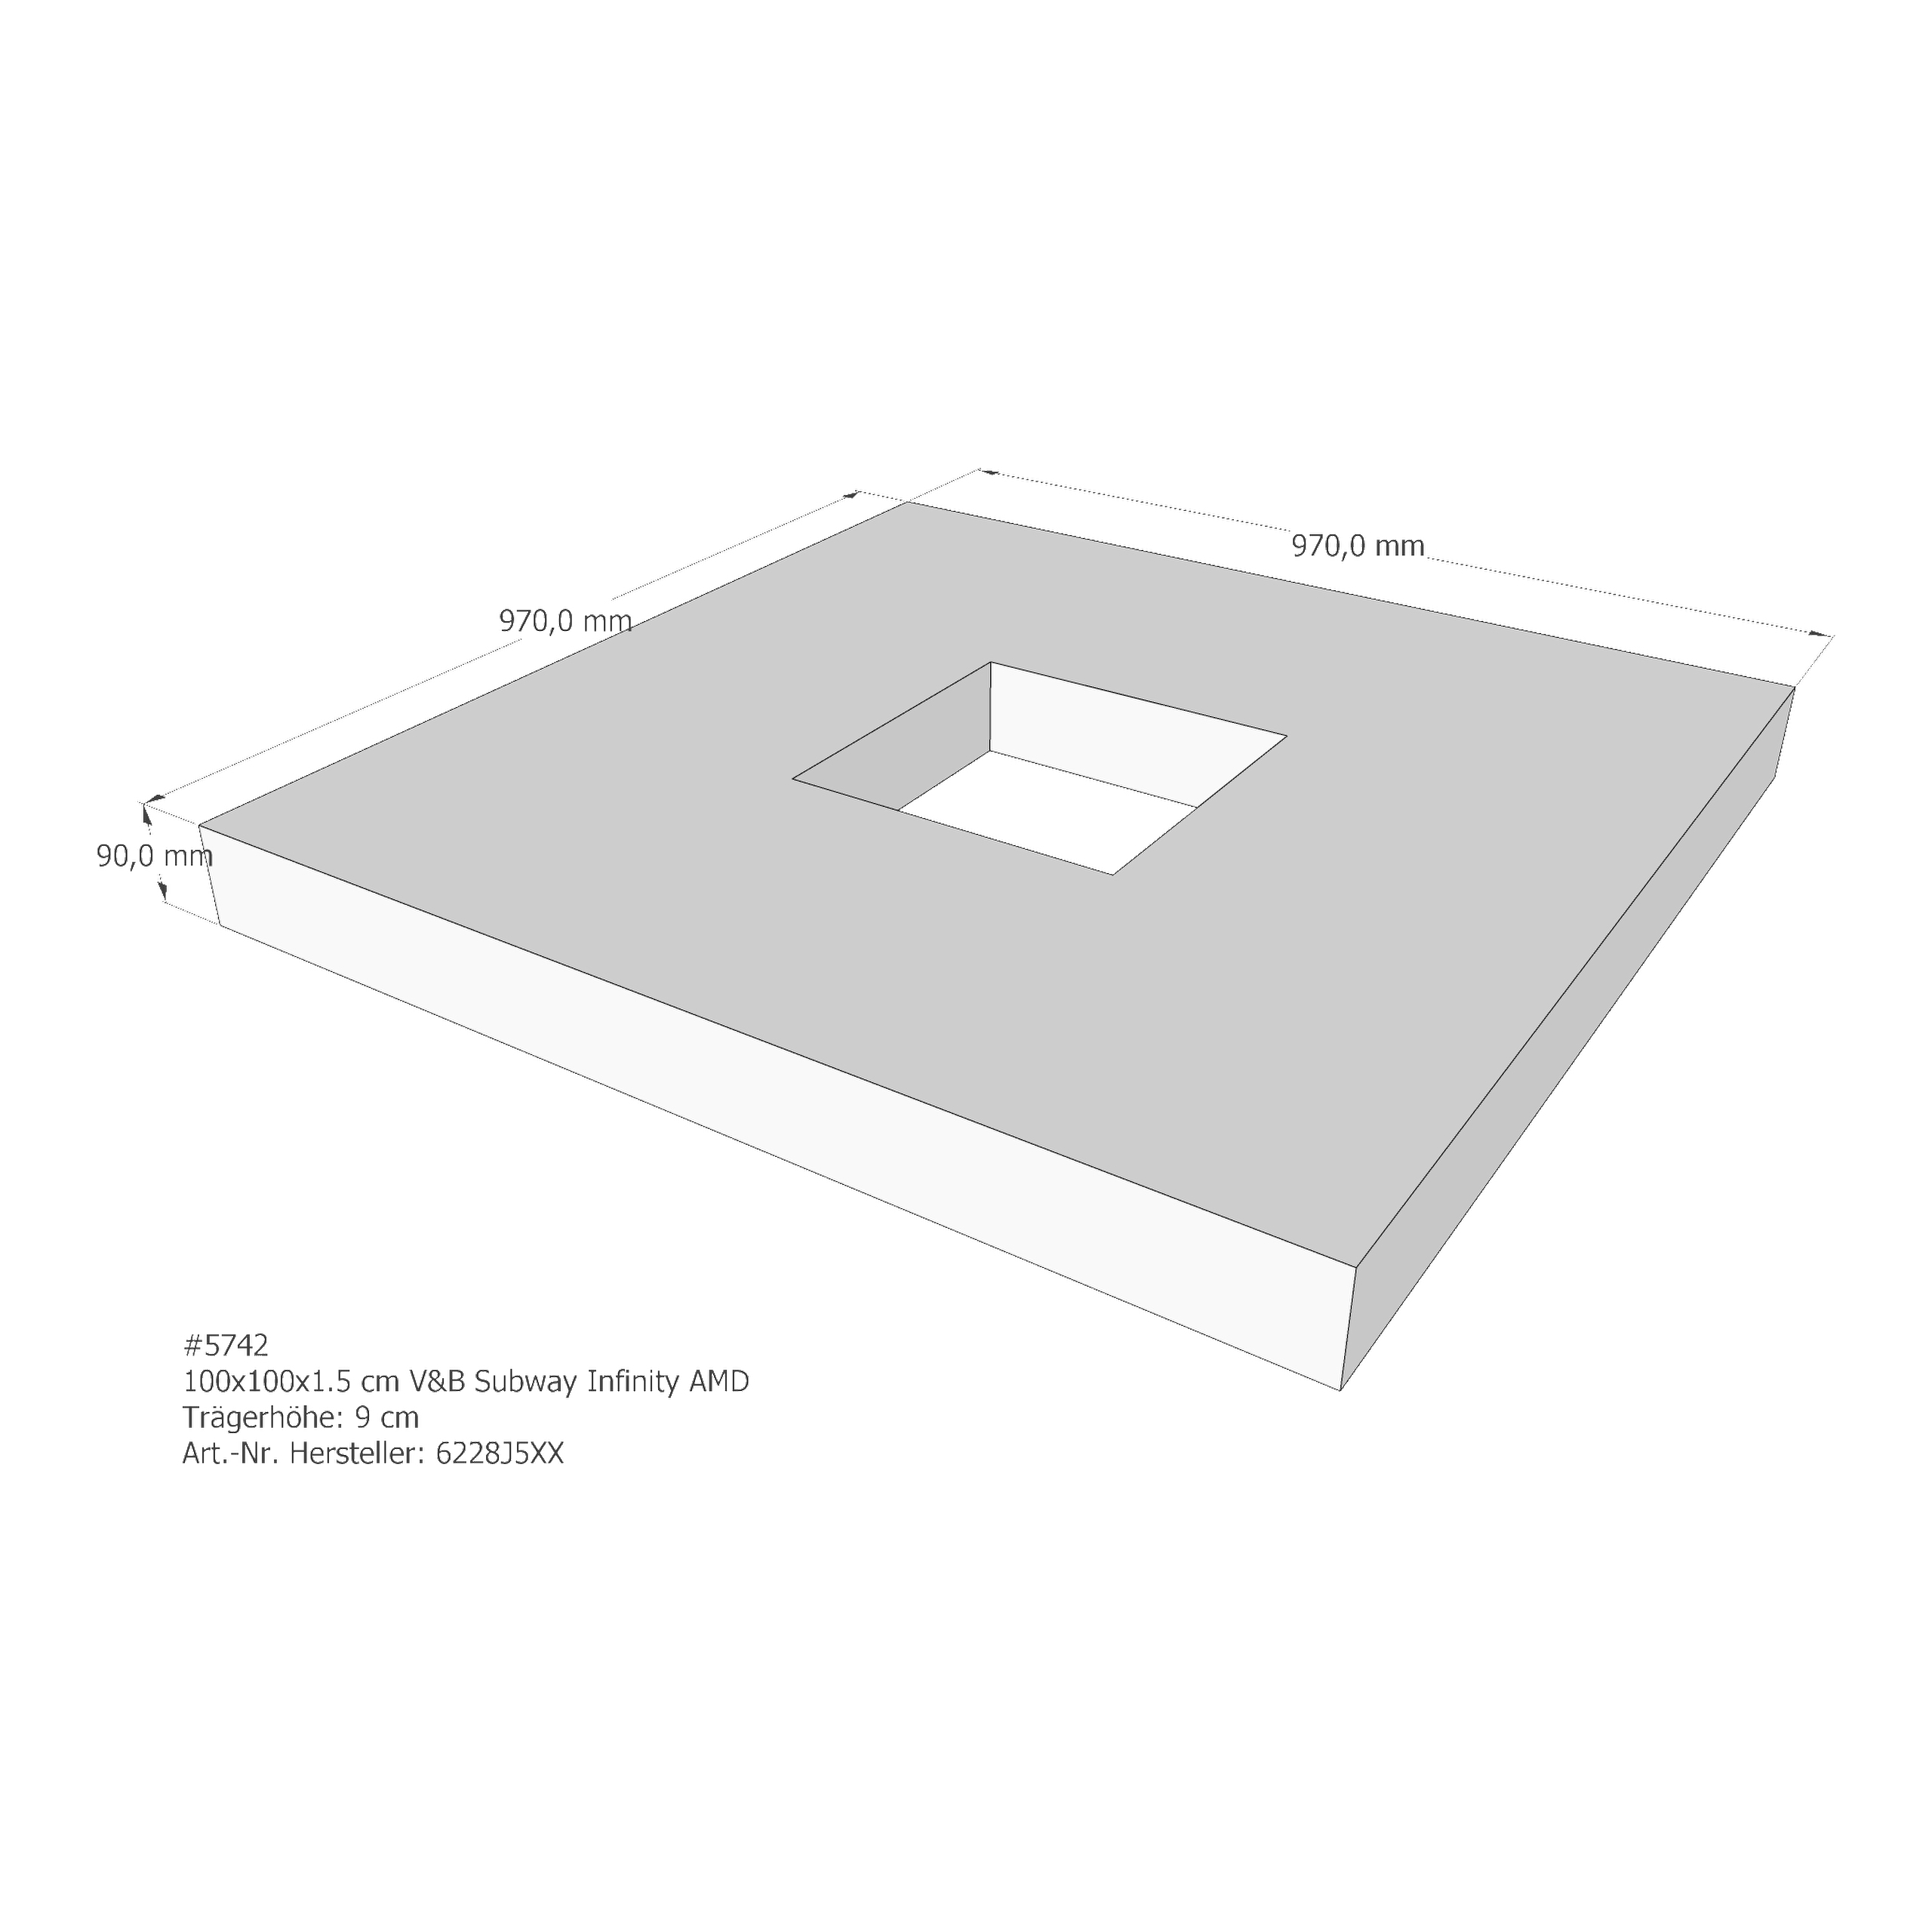 Duschwannenträger für Villeroy & Boch Subway Infinity 100 × 100 × 1,5 cm